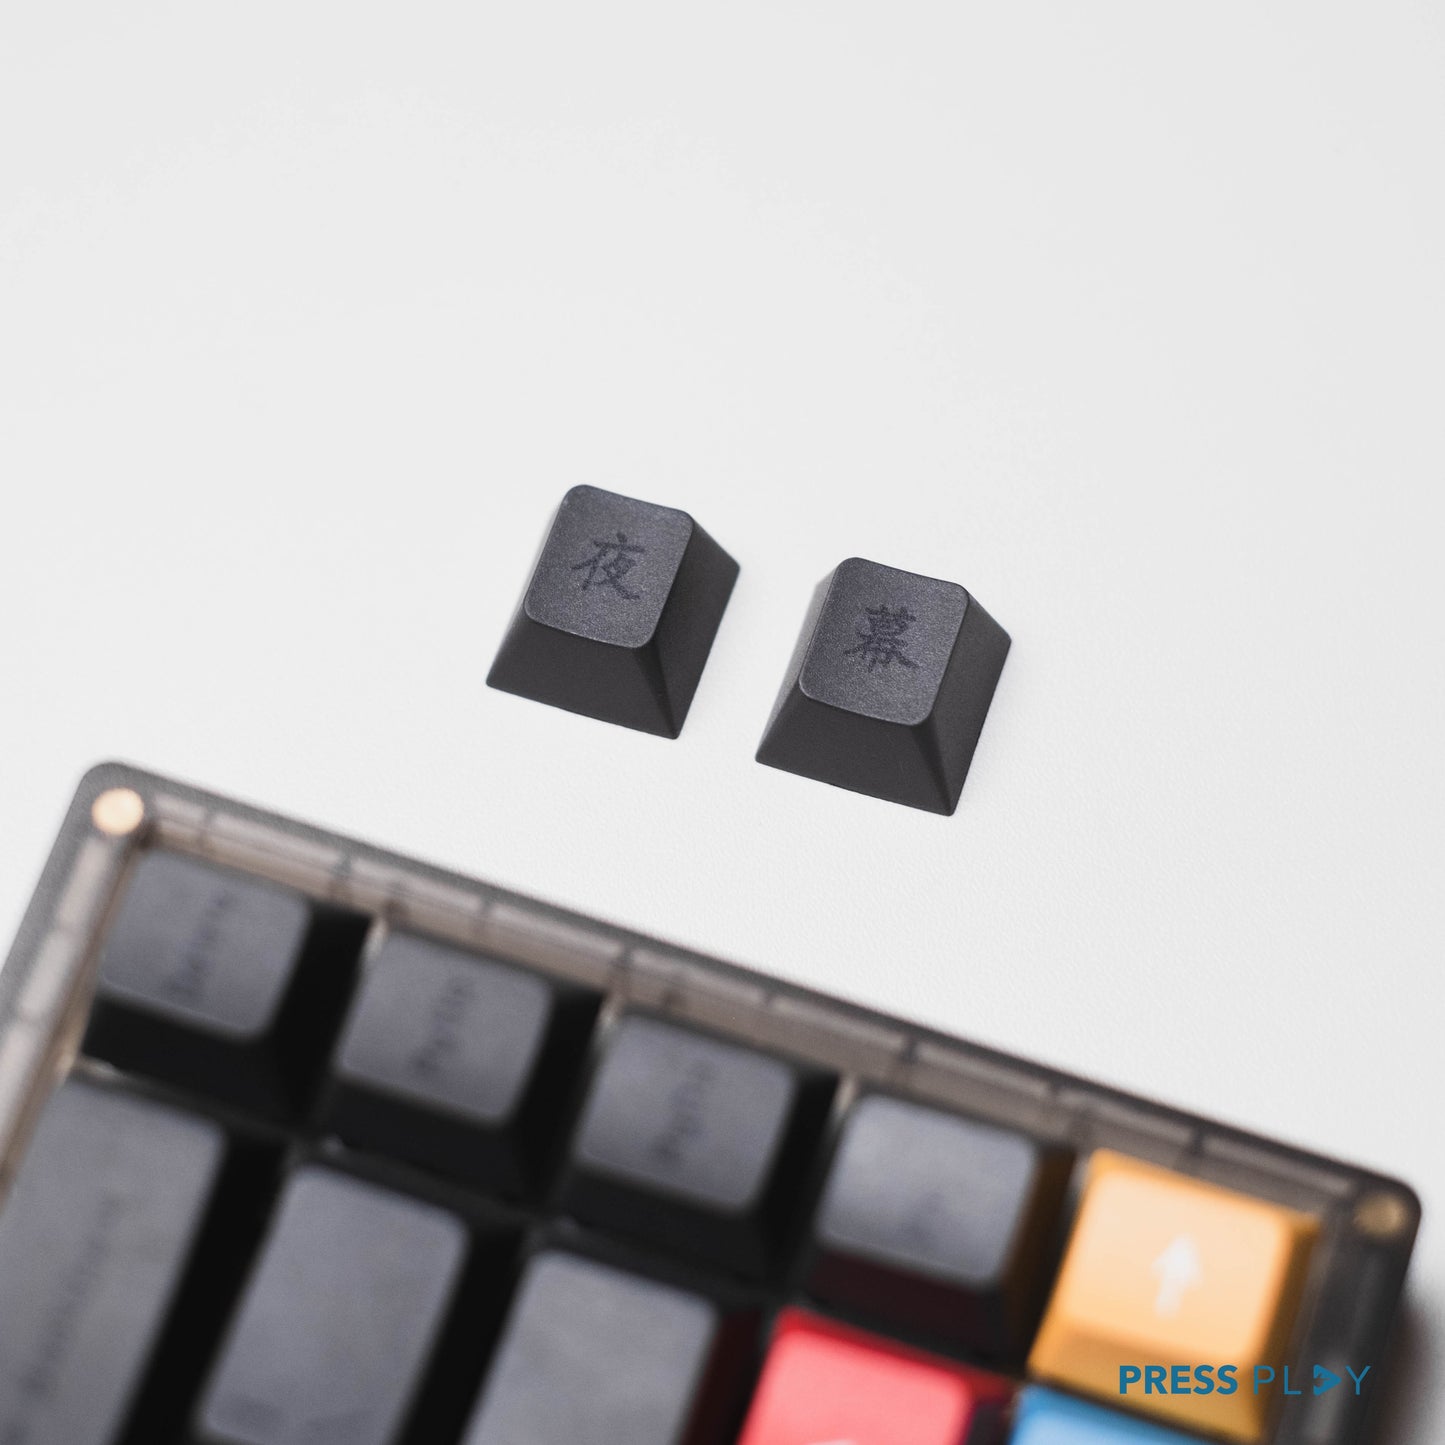 BLACKOUT PBT Dye Sub Sublimated Keycaps Keycap Set